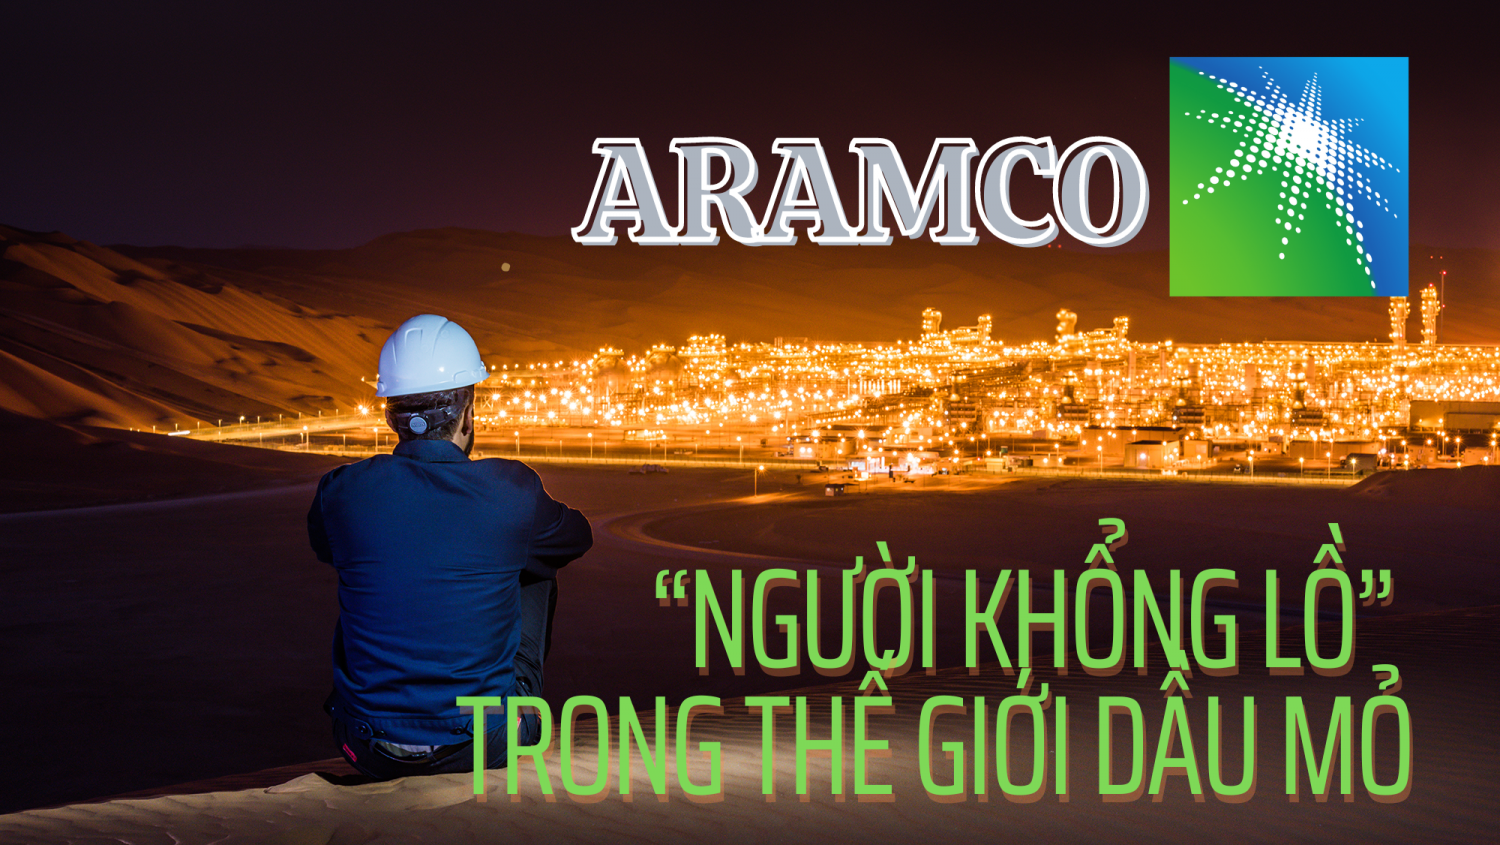 Aramco - “Người khổng lồ” trong thế giới dầu mỏ